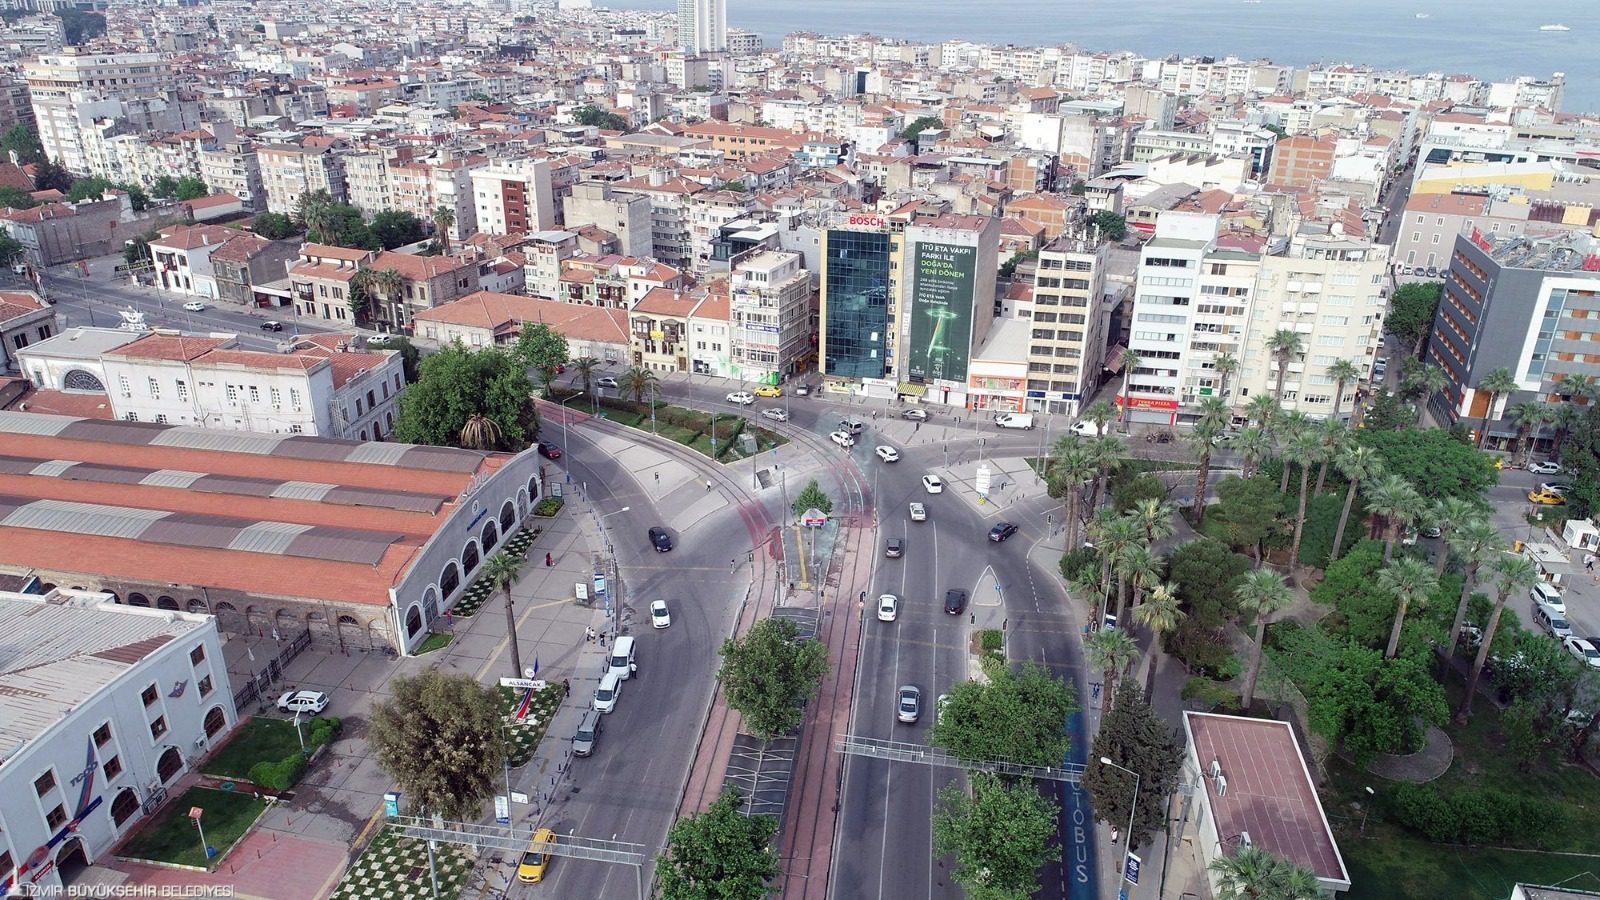 Emniyet İzmir Büyükşehir Belediyesi, kent trafiğinin daha güvenli ve daha hızlı seyretmesi için İzmir İl Emniyet Müdürlüğü ile güç birliği yaparak Elektronik Denetleme Sistemi’ni hayata geçirmeye hazırlanıyor. Sürücü kaynaklı trafikte yaşanan tıkanıklıkların önüne geçebilmek için başlatılacak proje kapsamında, sistem kullanarak parklanma, hız koridoru ve kırmızı ışık noktalarındaki ihlaller denetlenebilecek.